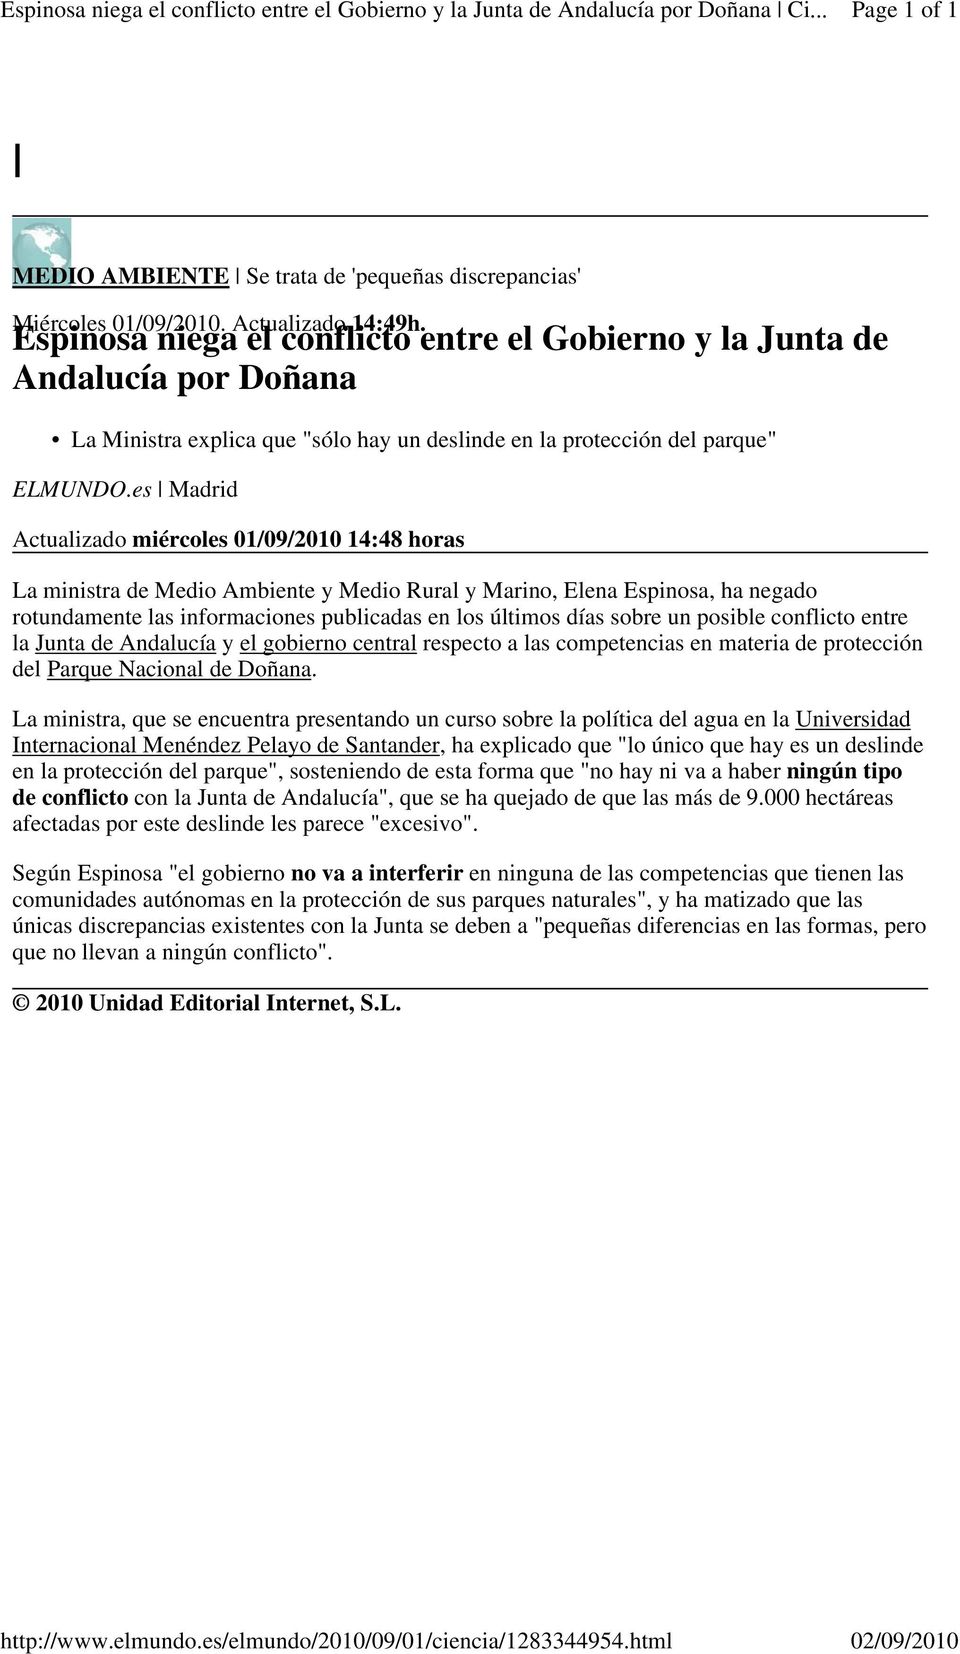 Espinosa niega el conflicto entre el Gobierno y la Junta de Andalucía por Doñana La Ministra explica que "sólo hay un deslinde en la protección del parque" ELMUNDO.